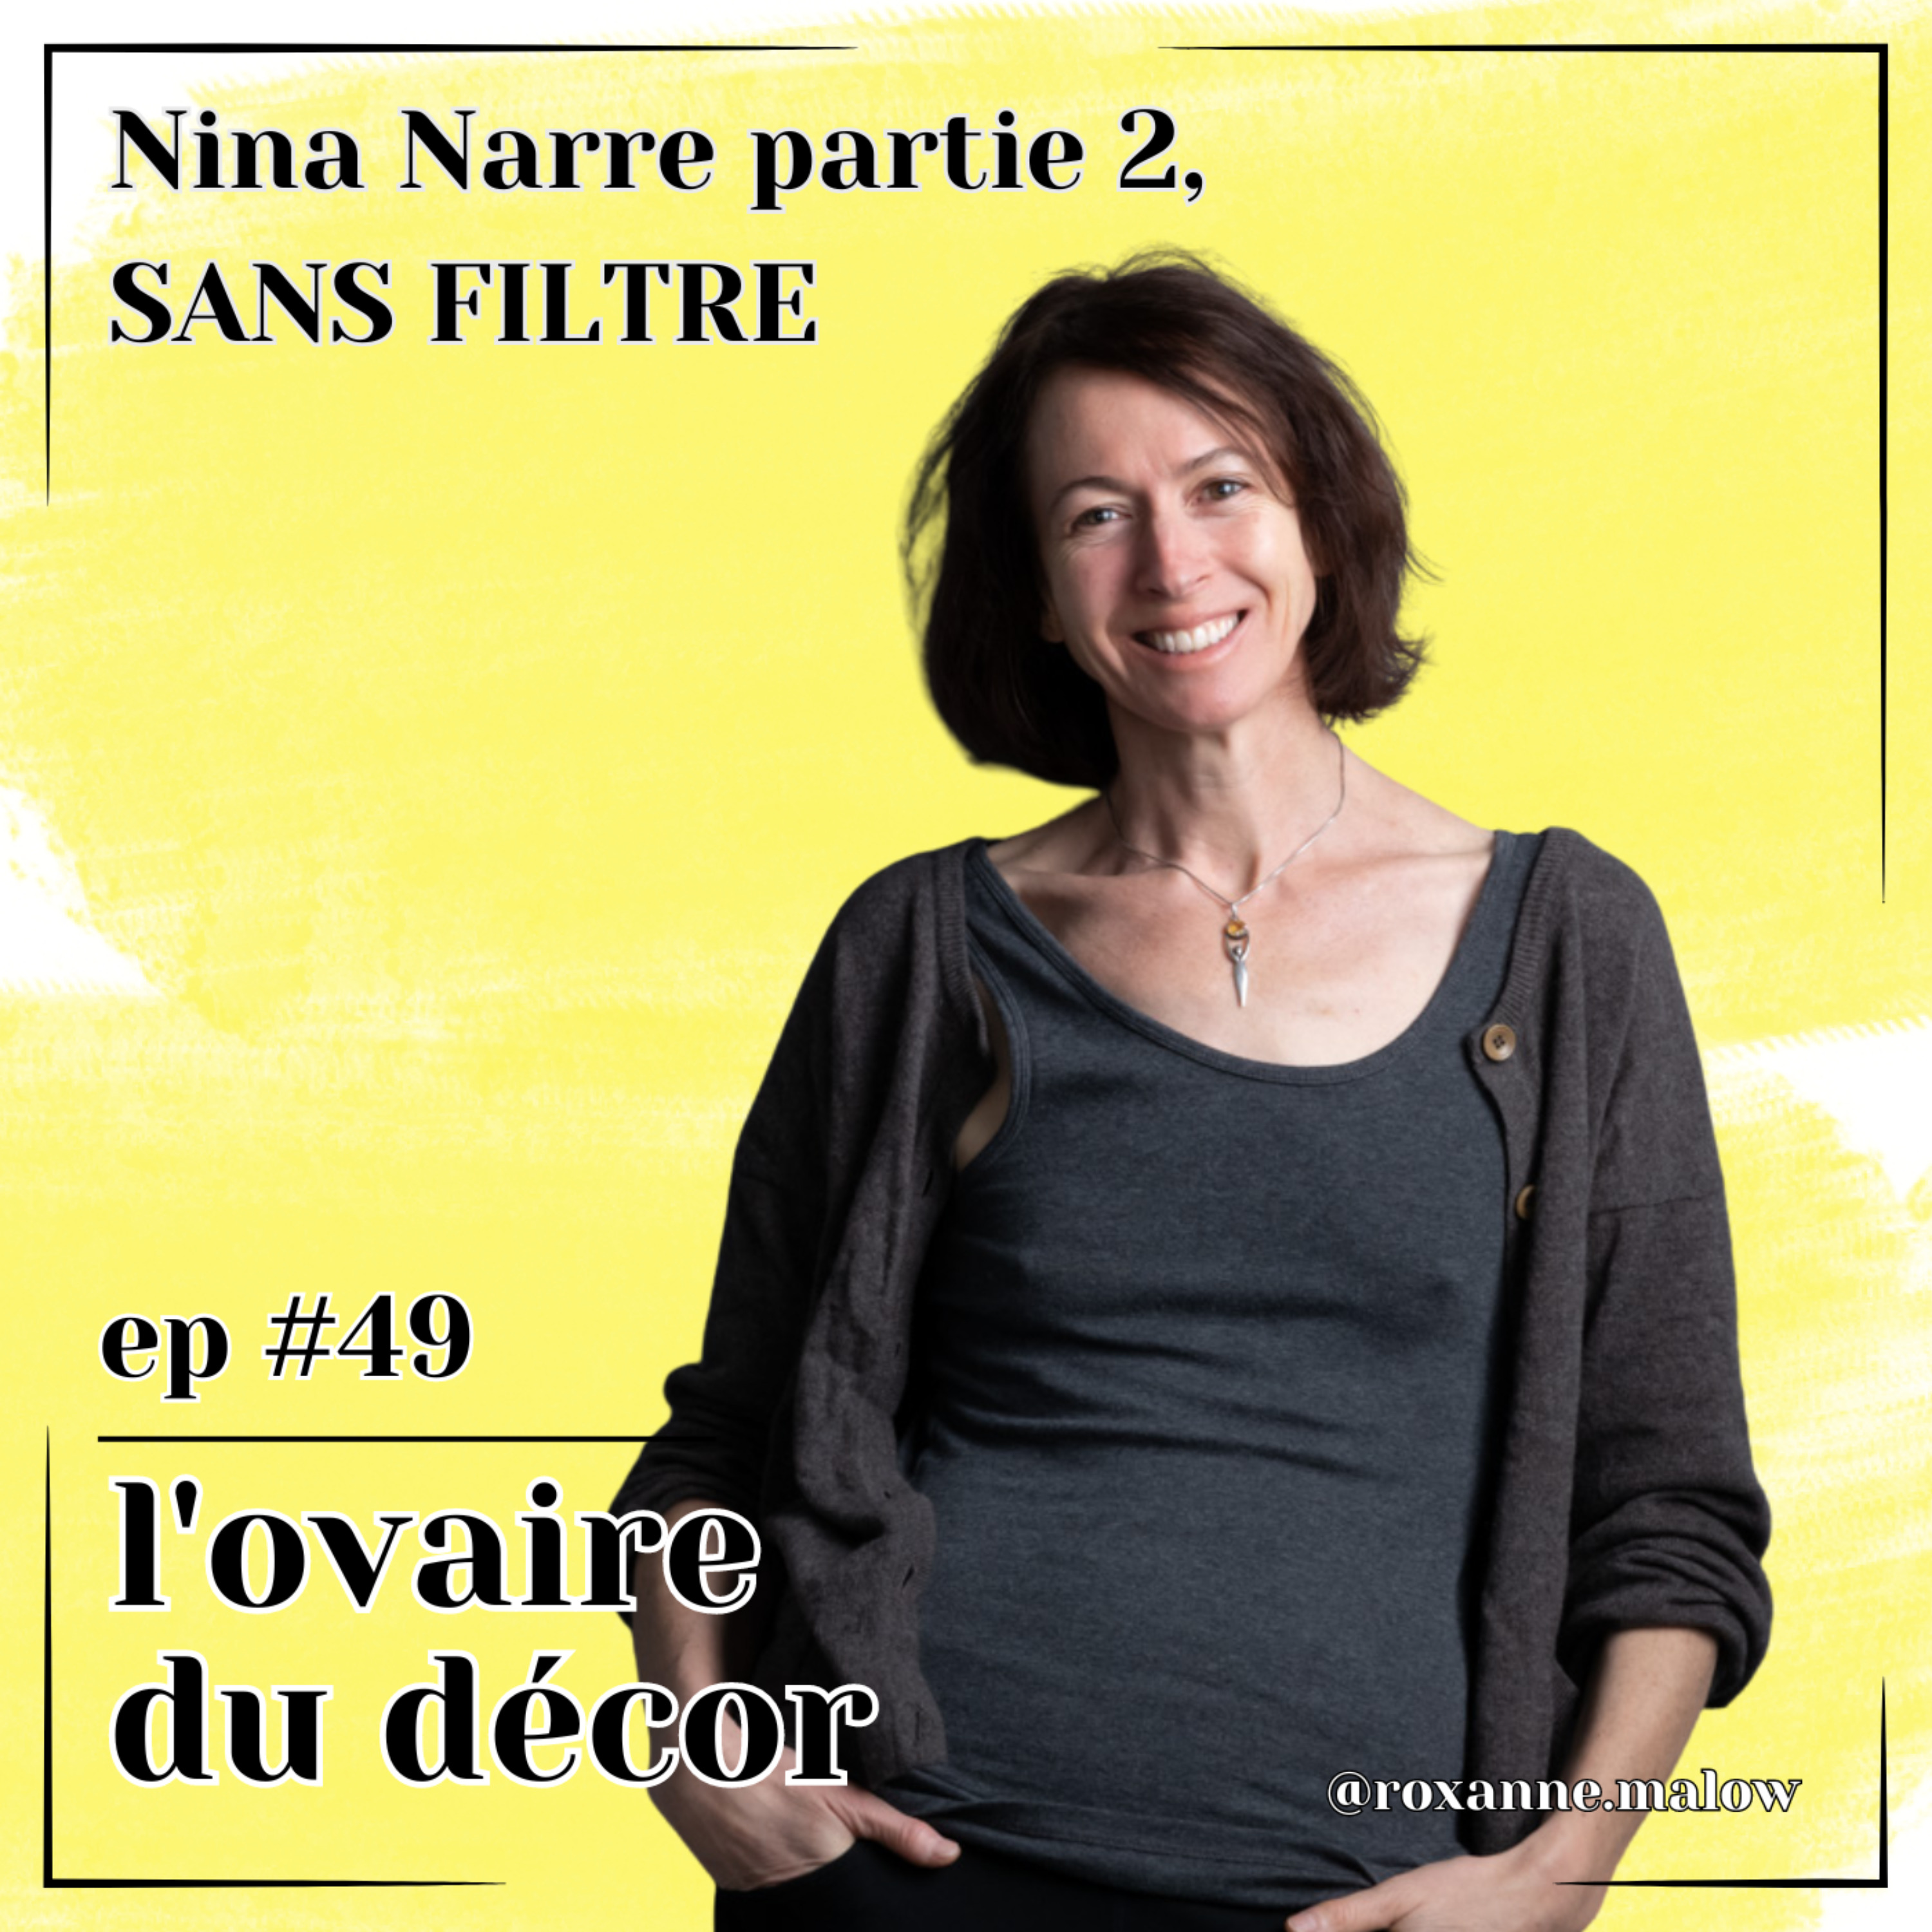 Ep #50 Nina Narre, 2e partie SANS FILTRE